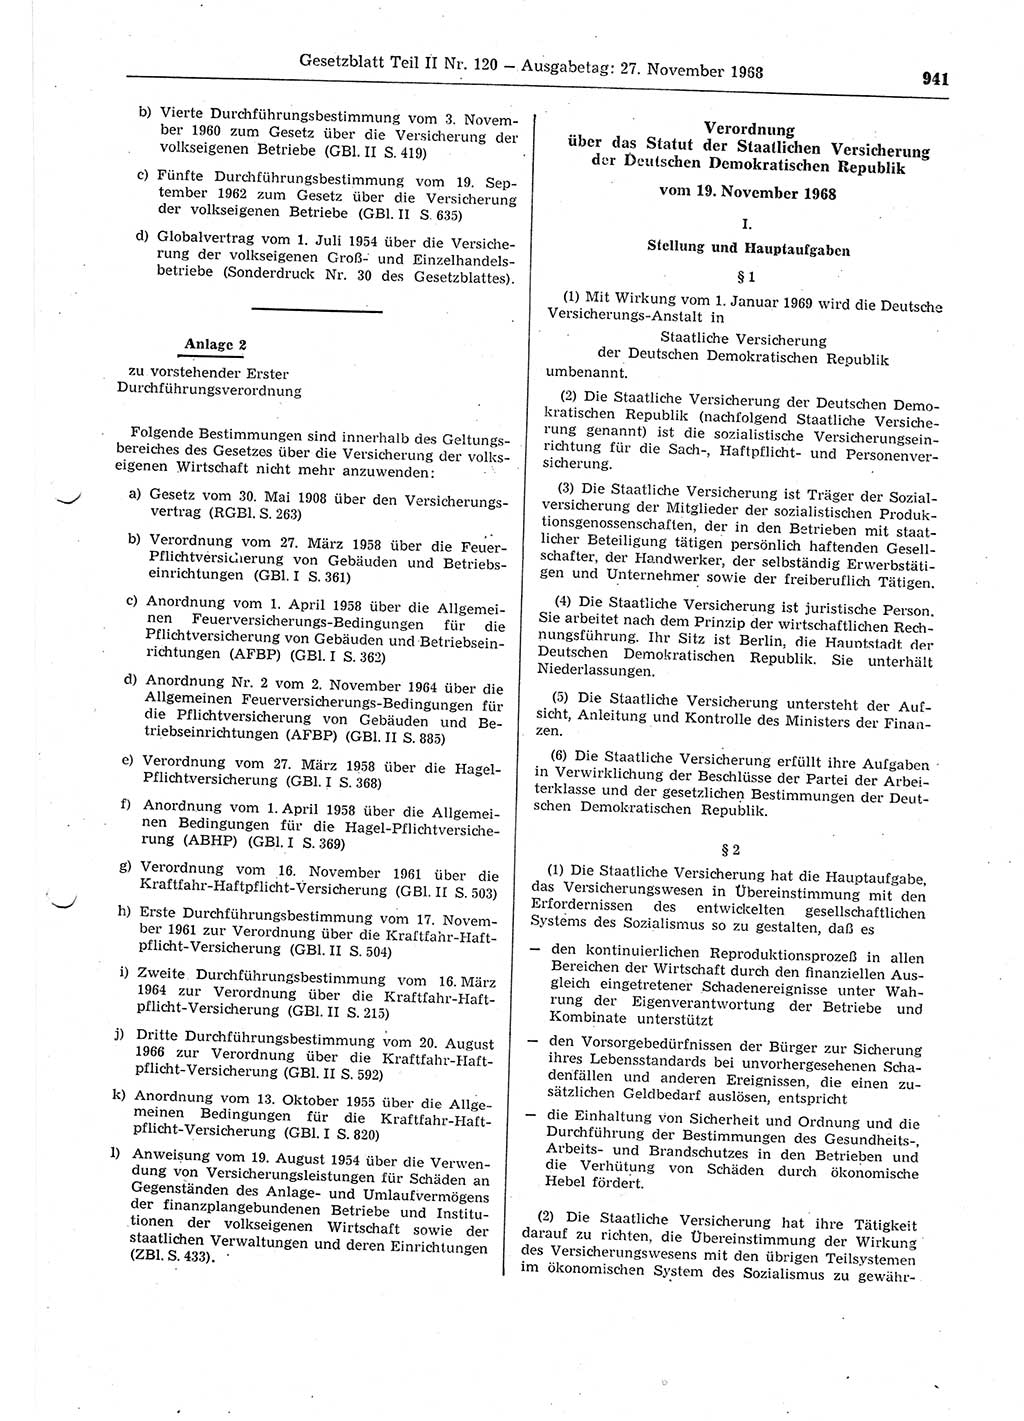 Gesetzblatt (GBl.) der Deutschen Demokratischen Republik (DDR) Teil ⅠⅠ 1968, Seite 941 (GBl. DDR ⅠⅠ 1968, S. 941)